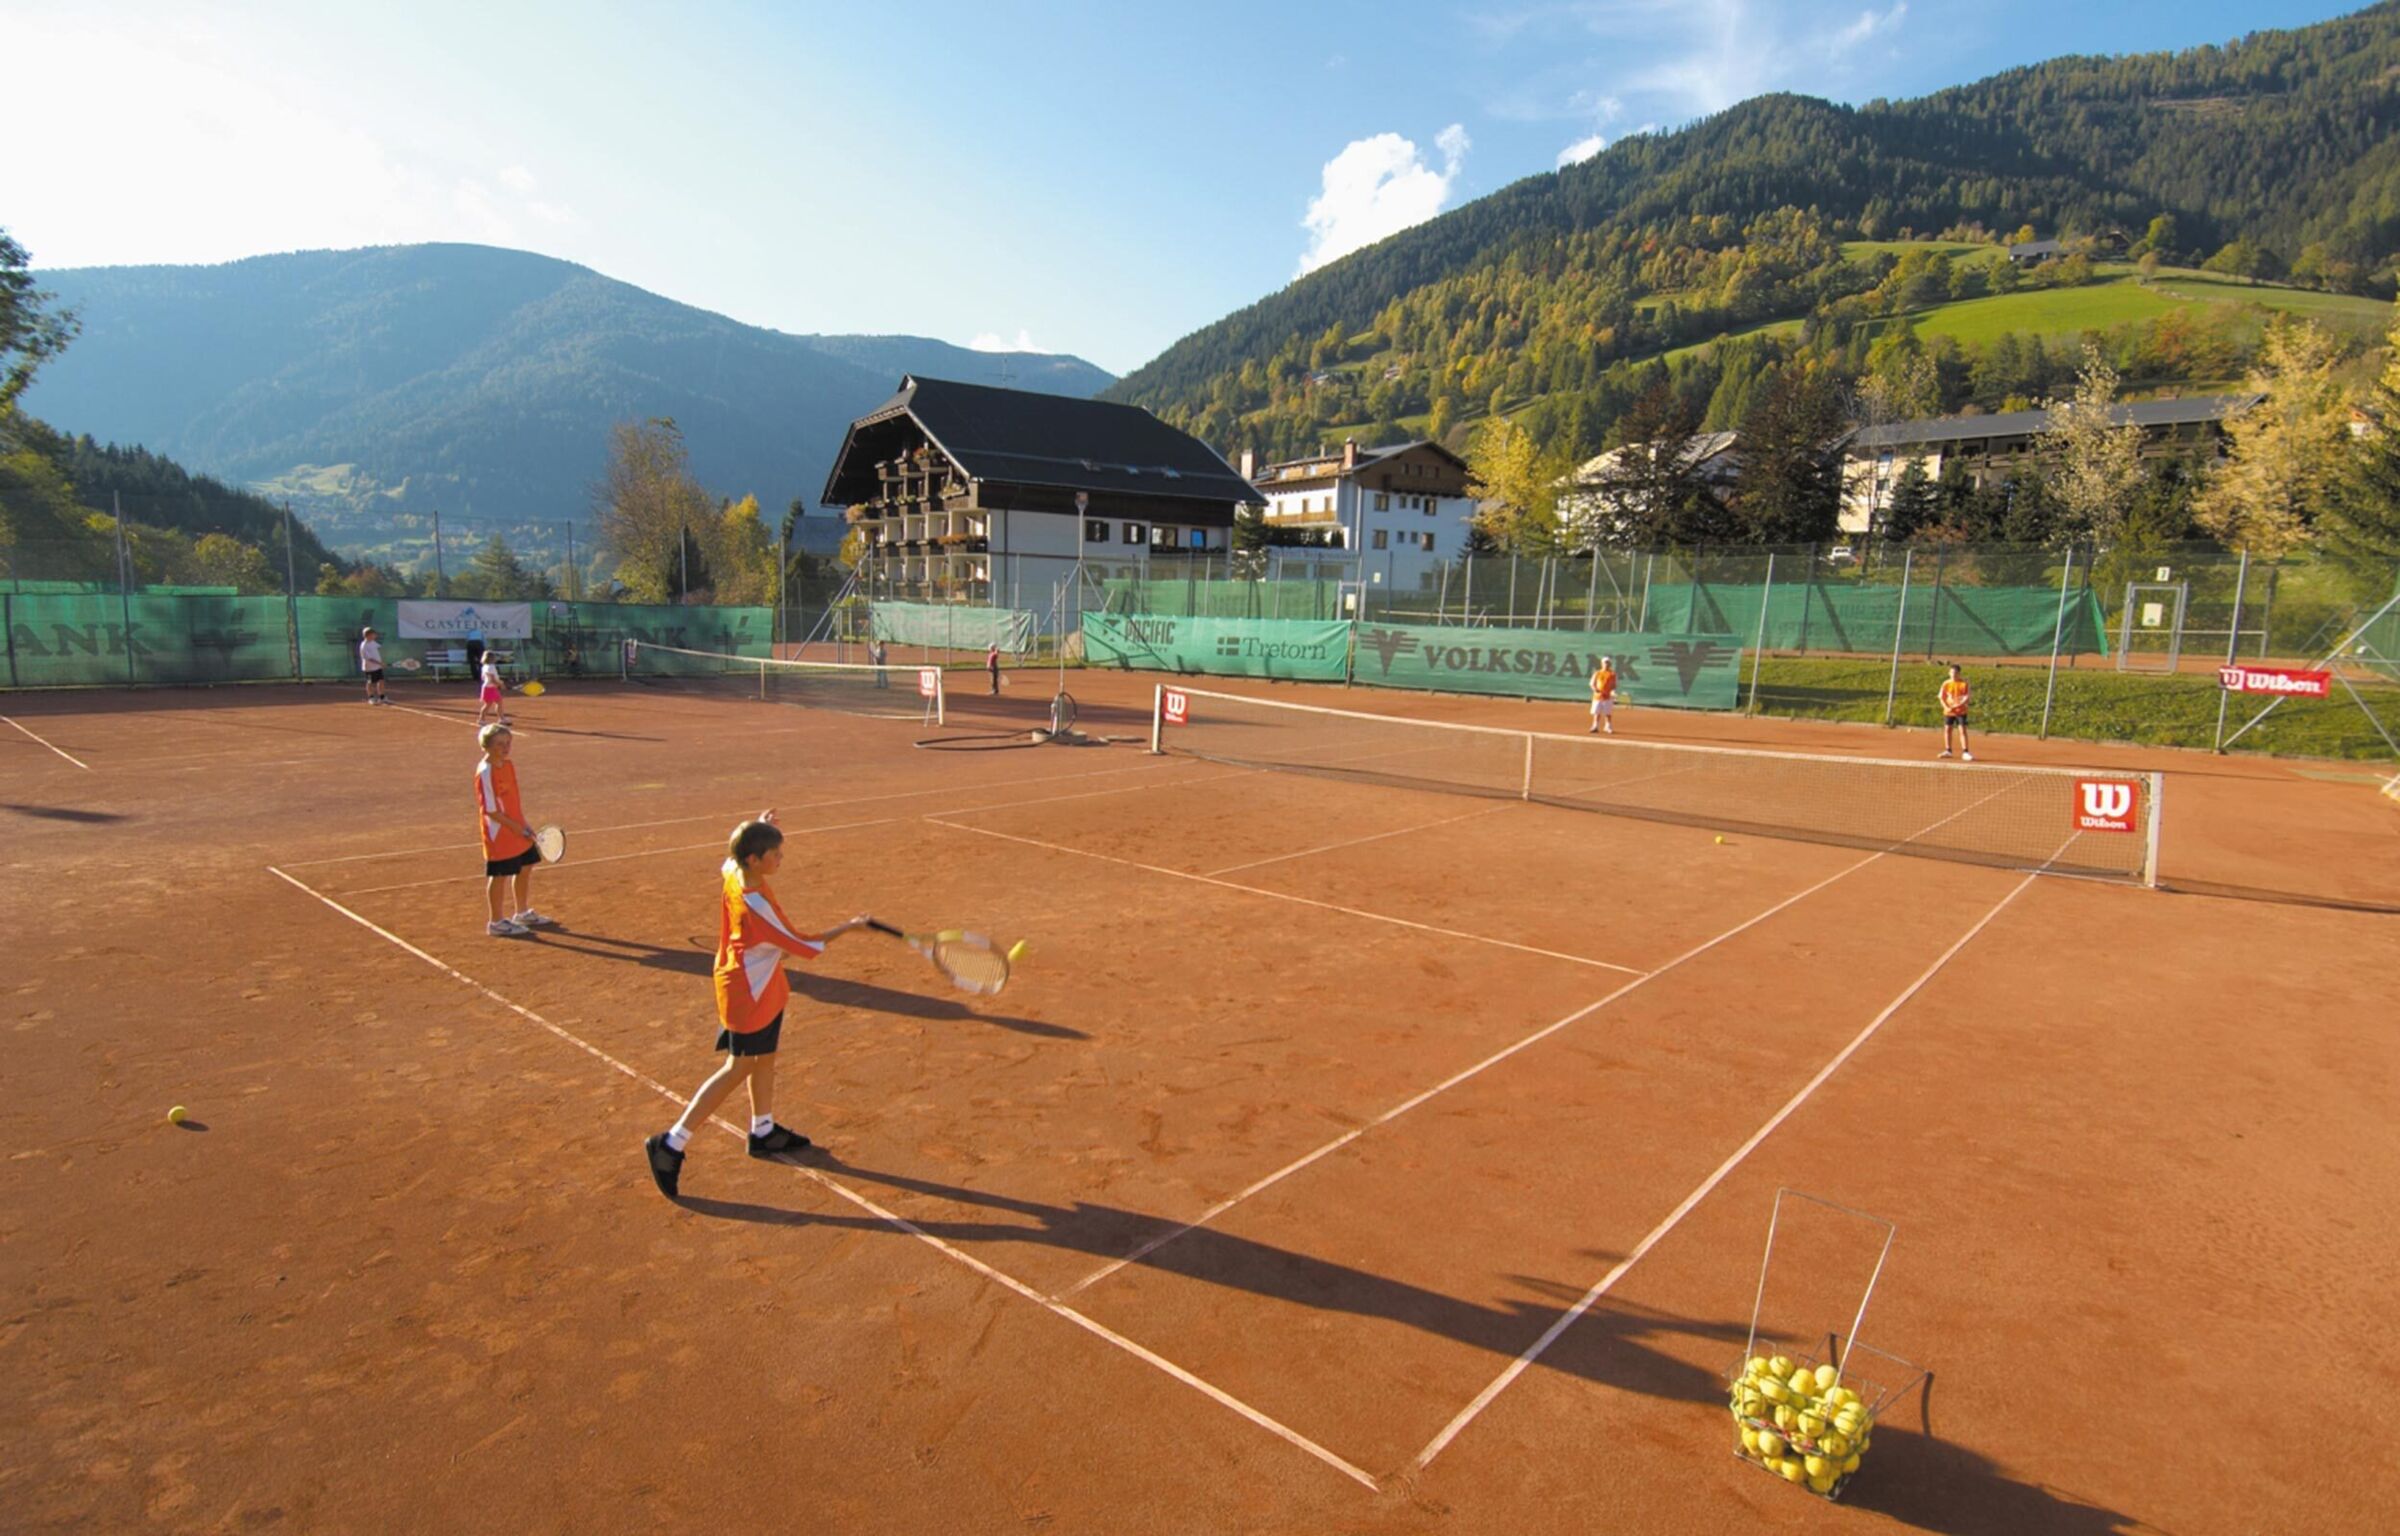 Kinder spielen ein Doppel auf einem Tennisplatz